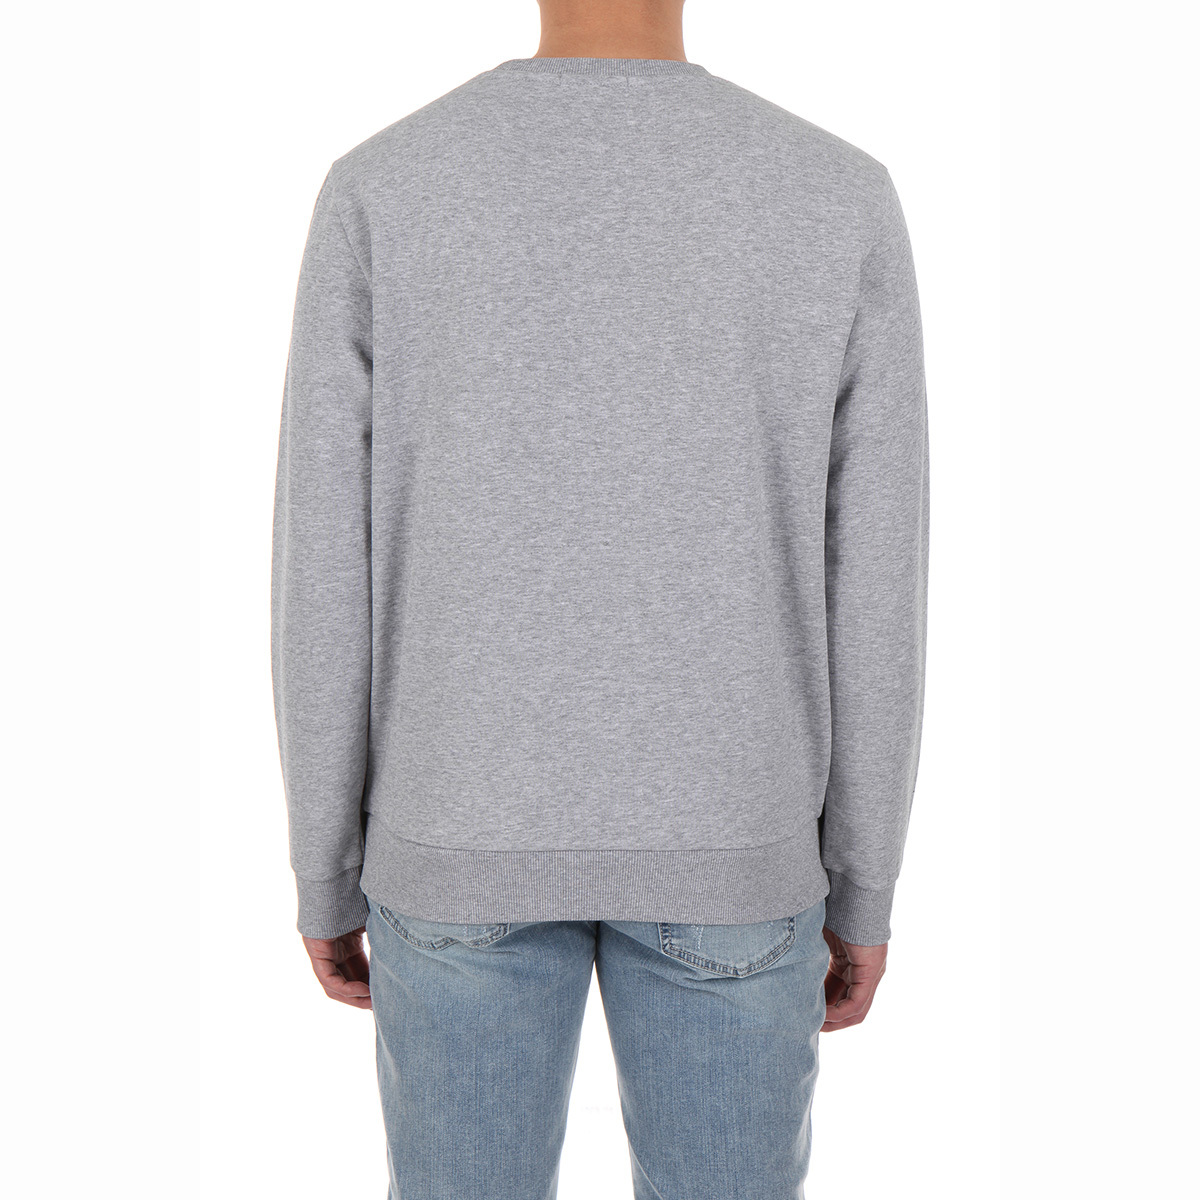 게스 남성 긴소매 티셔츠 - 멜란지 그레이(스몰로고), XL